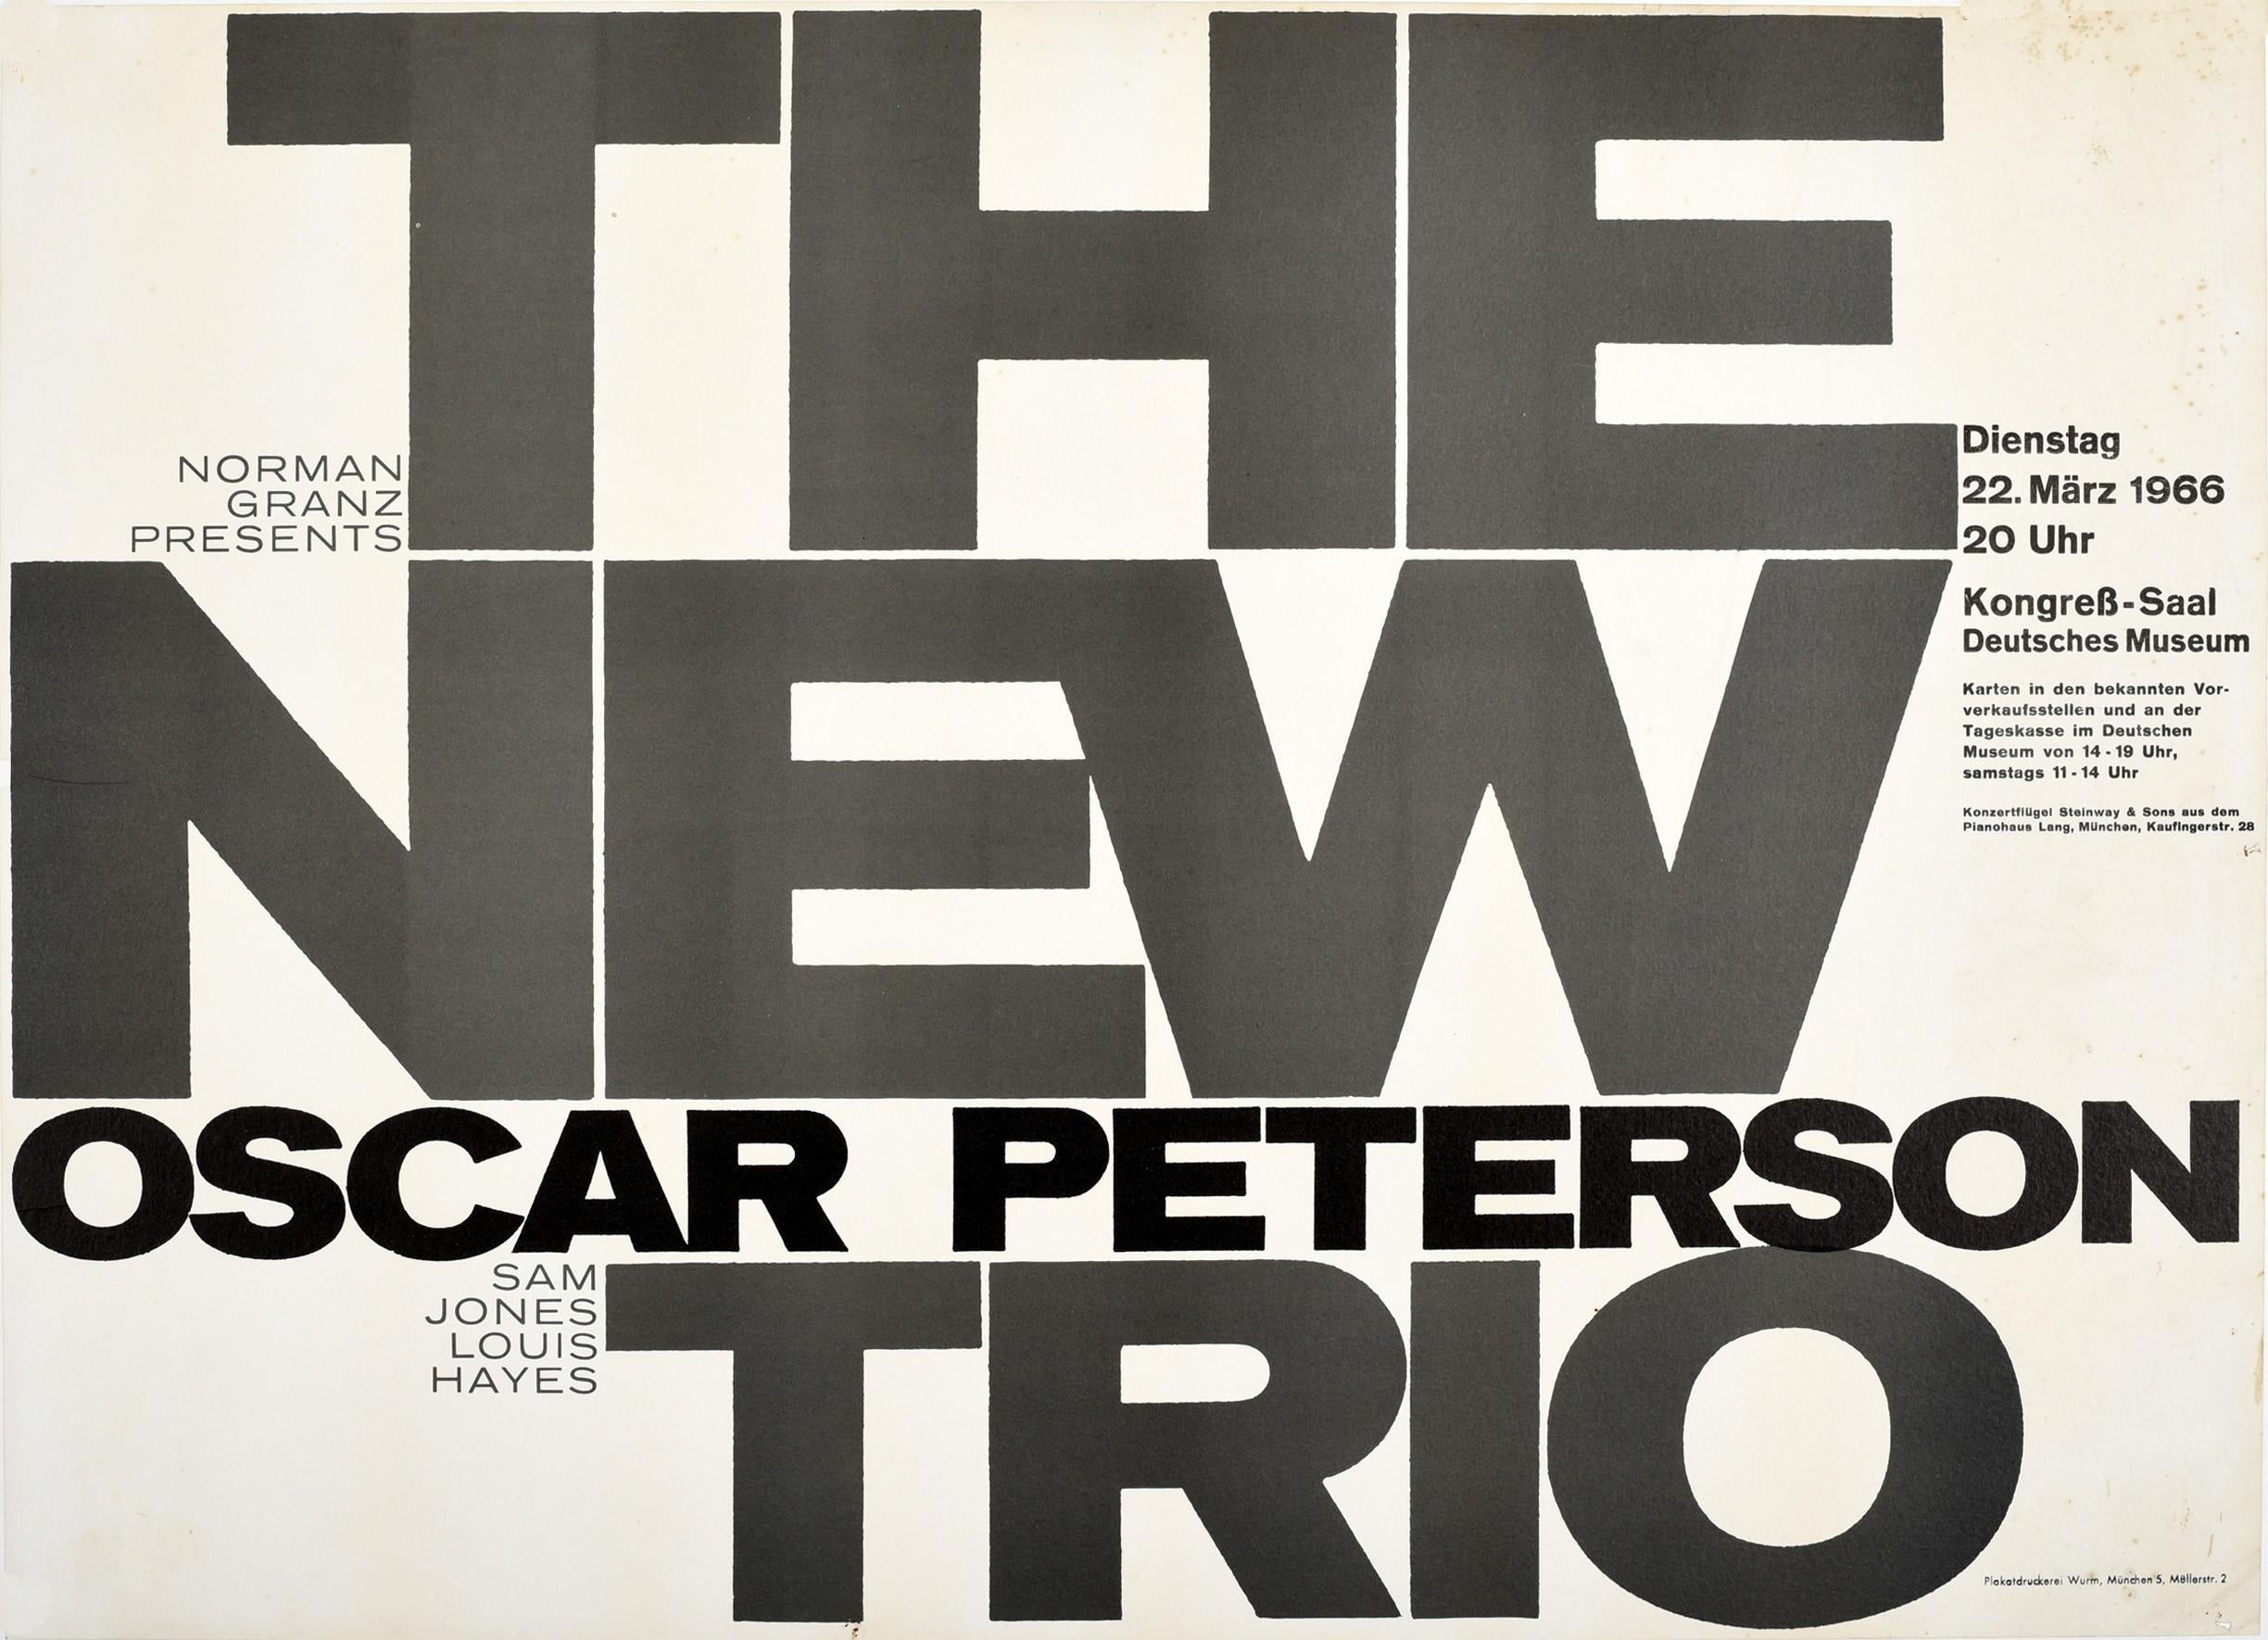 Original-Werbeplakat für Jazzmusik - Norman Granz presents The New Oscar Peterson Trio Sam Jones Louis Hayes - für ein Konzert am 22. März 1966. Typografisch gestaltet, mit dem fetten Titelschriftzug in der Mitte und dem Rest des Textes an der